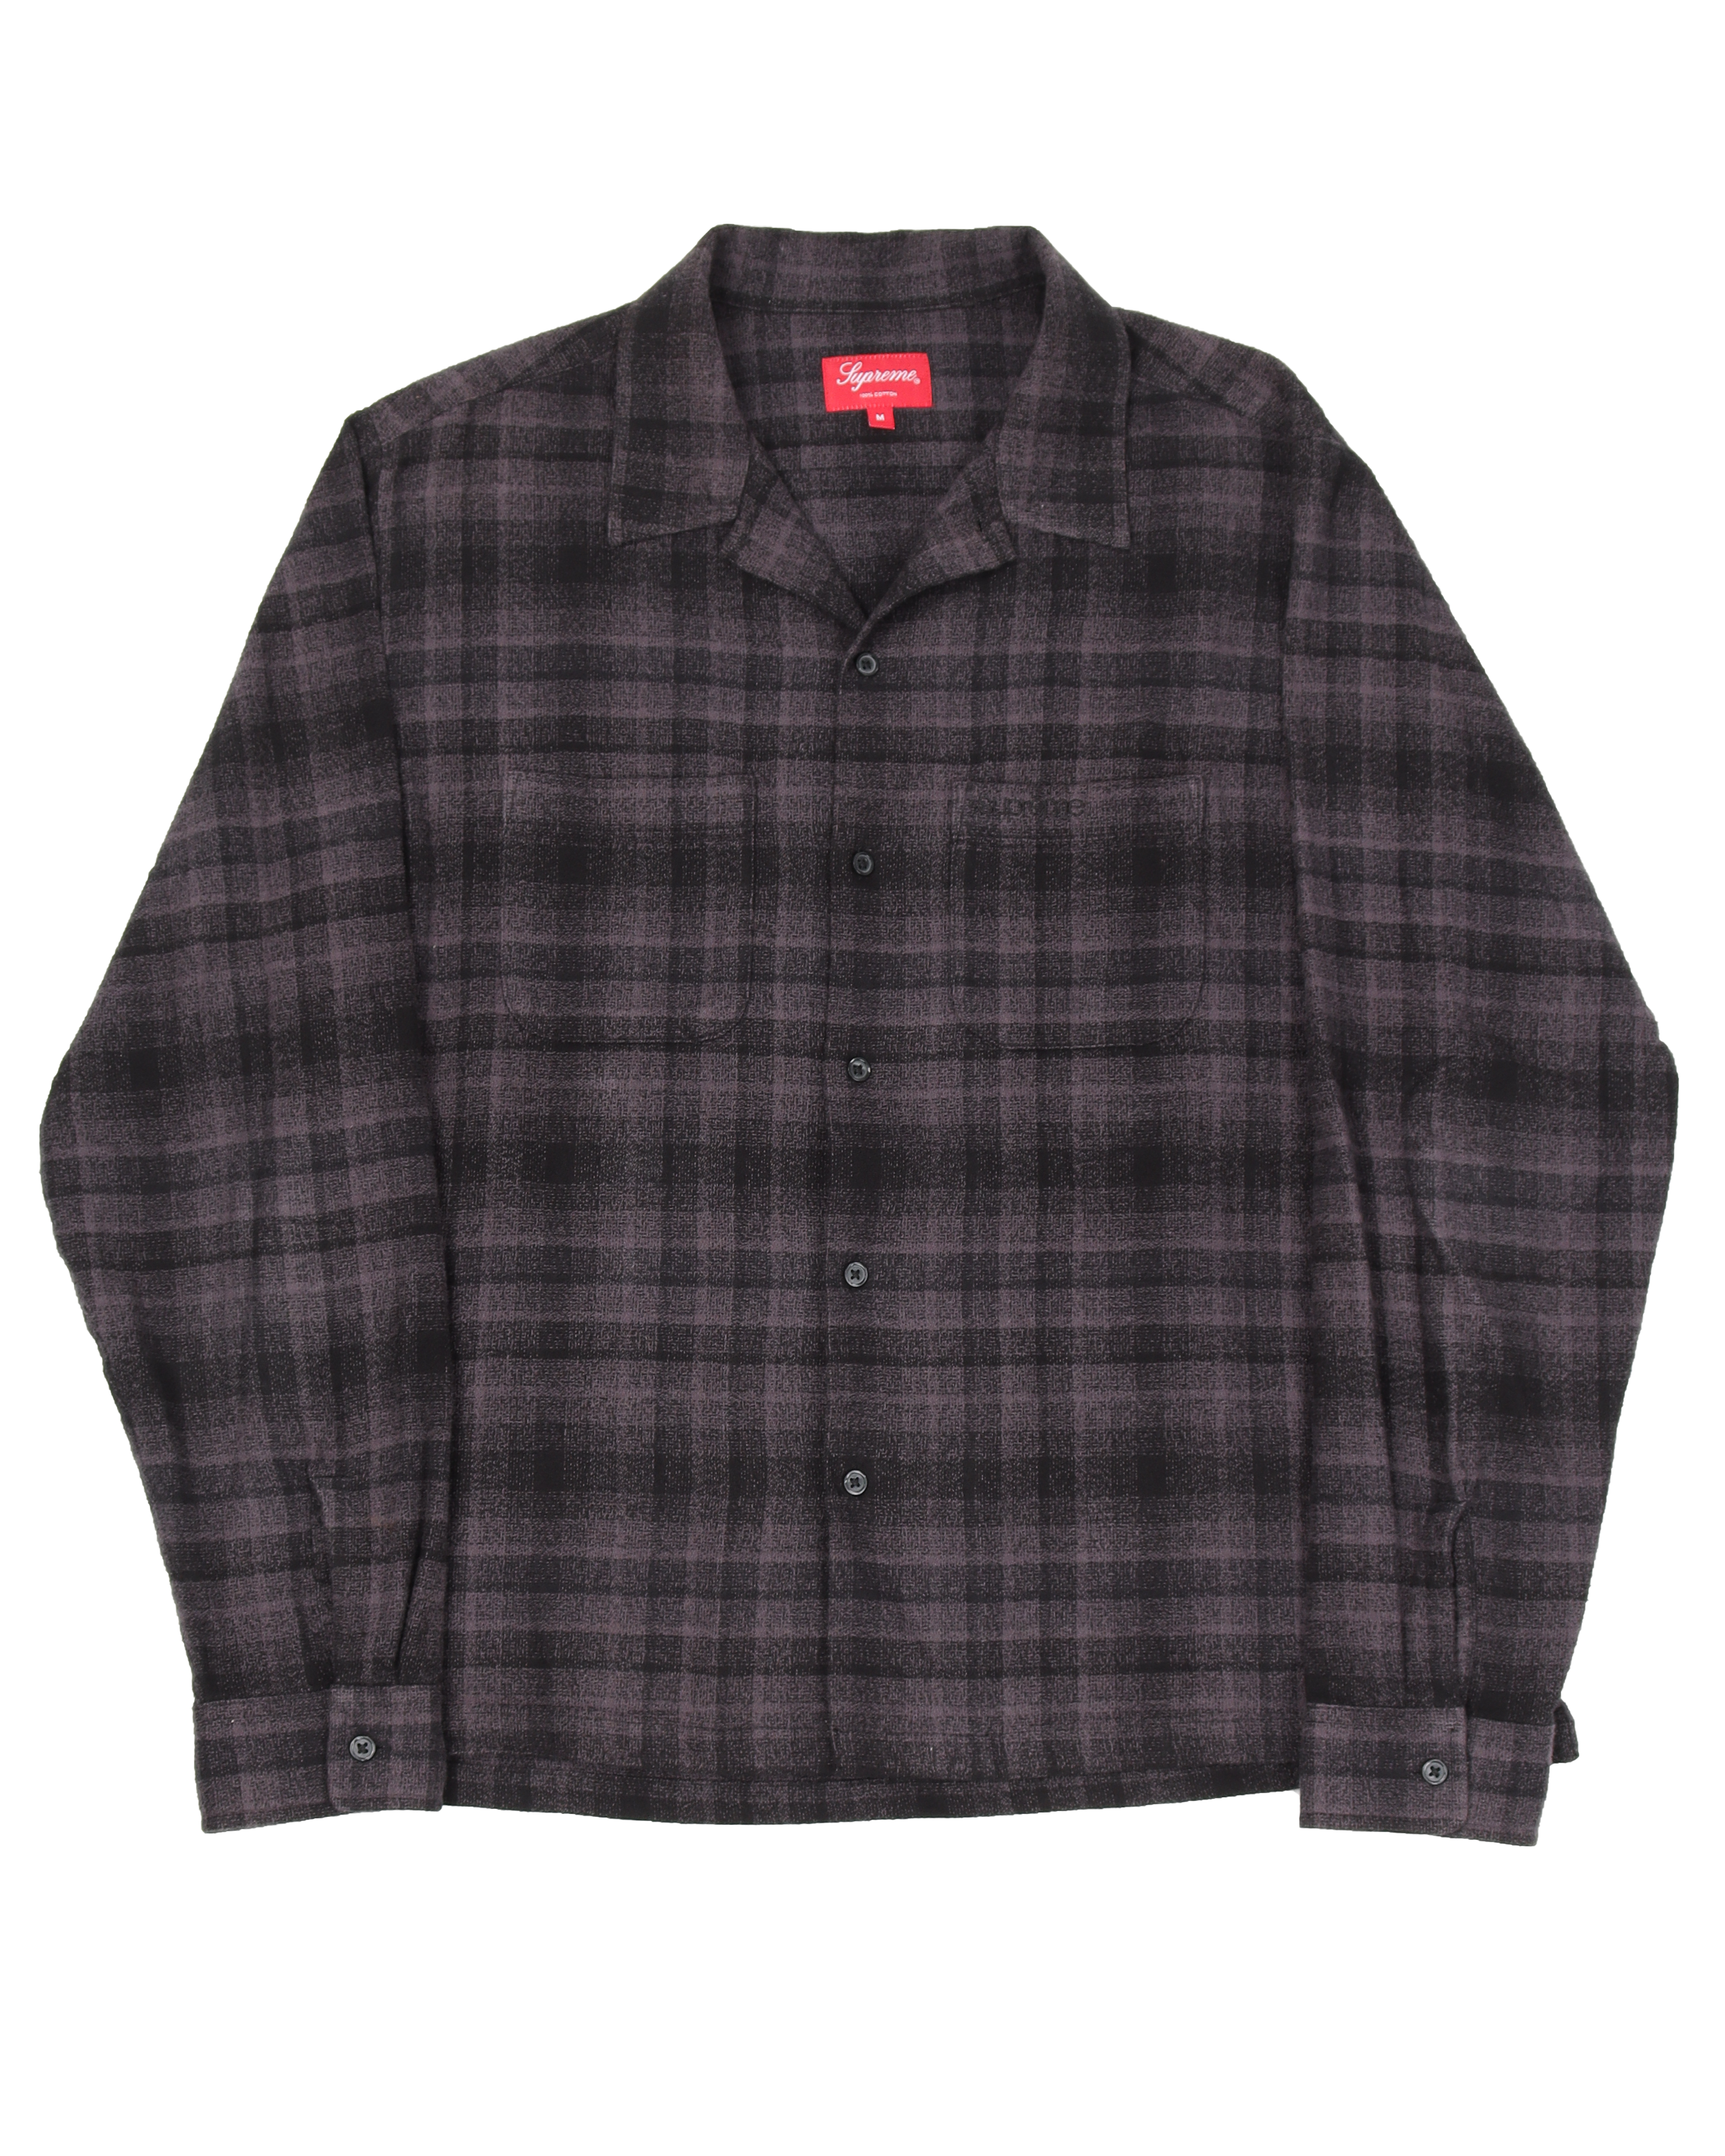 Supreme Plaid Flannel Shirt Black Mサイズ